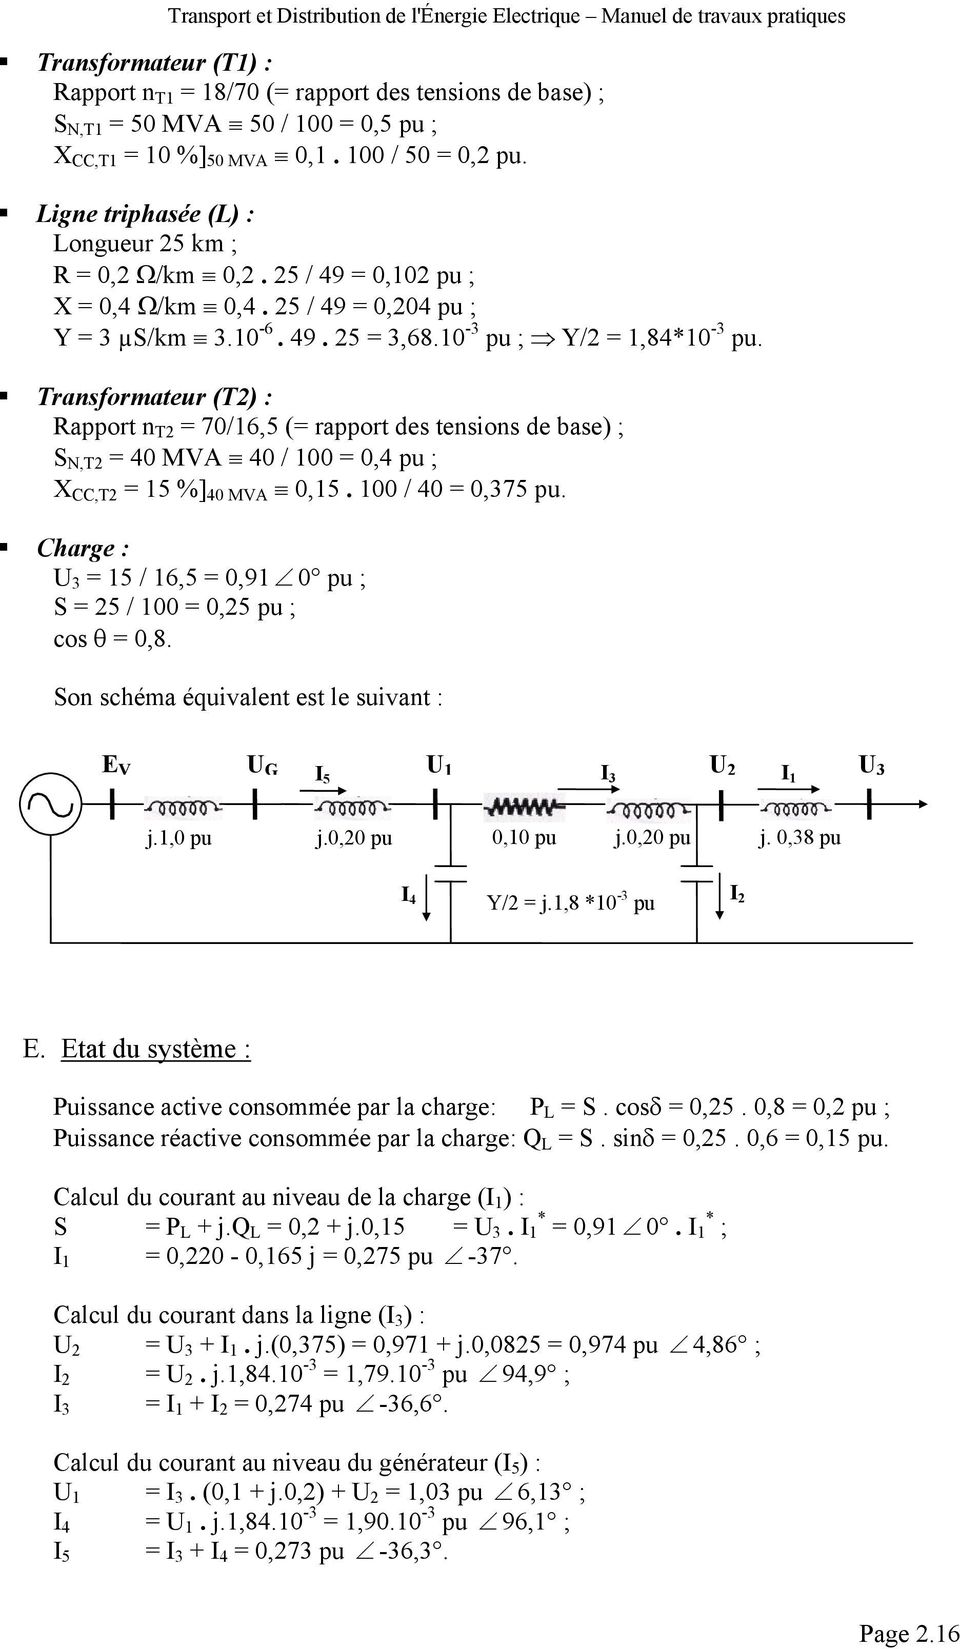 Transformateur (T) : Rapport n T = 70/16,5 (= rapport des tensions de base) ; S N,T = 40 MVA 40 / 100 = 0,4 pu ; X CC,T = 15 %] 40 MVA 0,15. 100 / 40 = 0,375 pu.